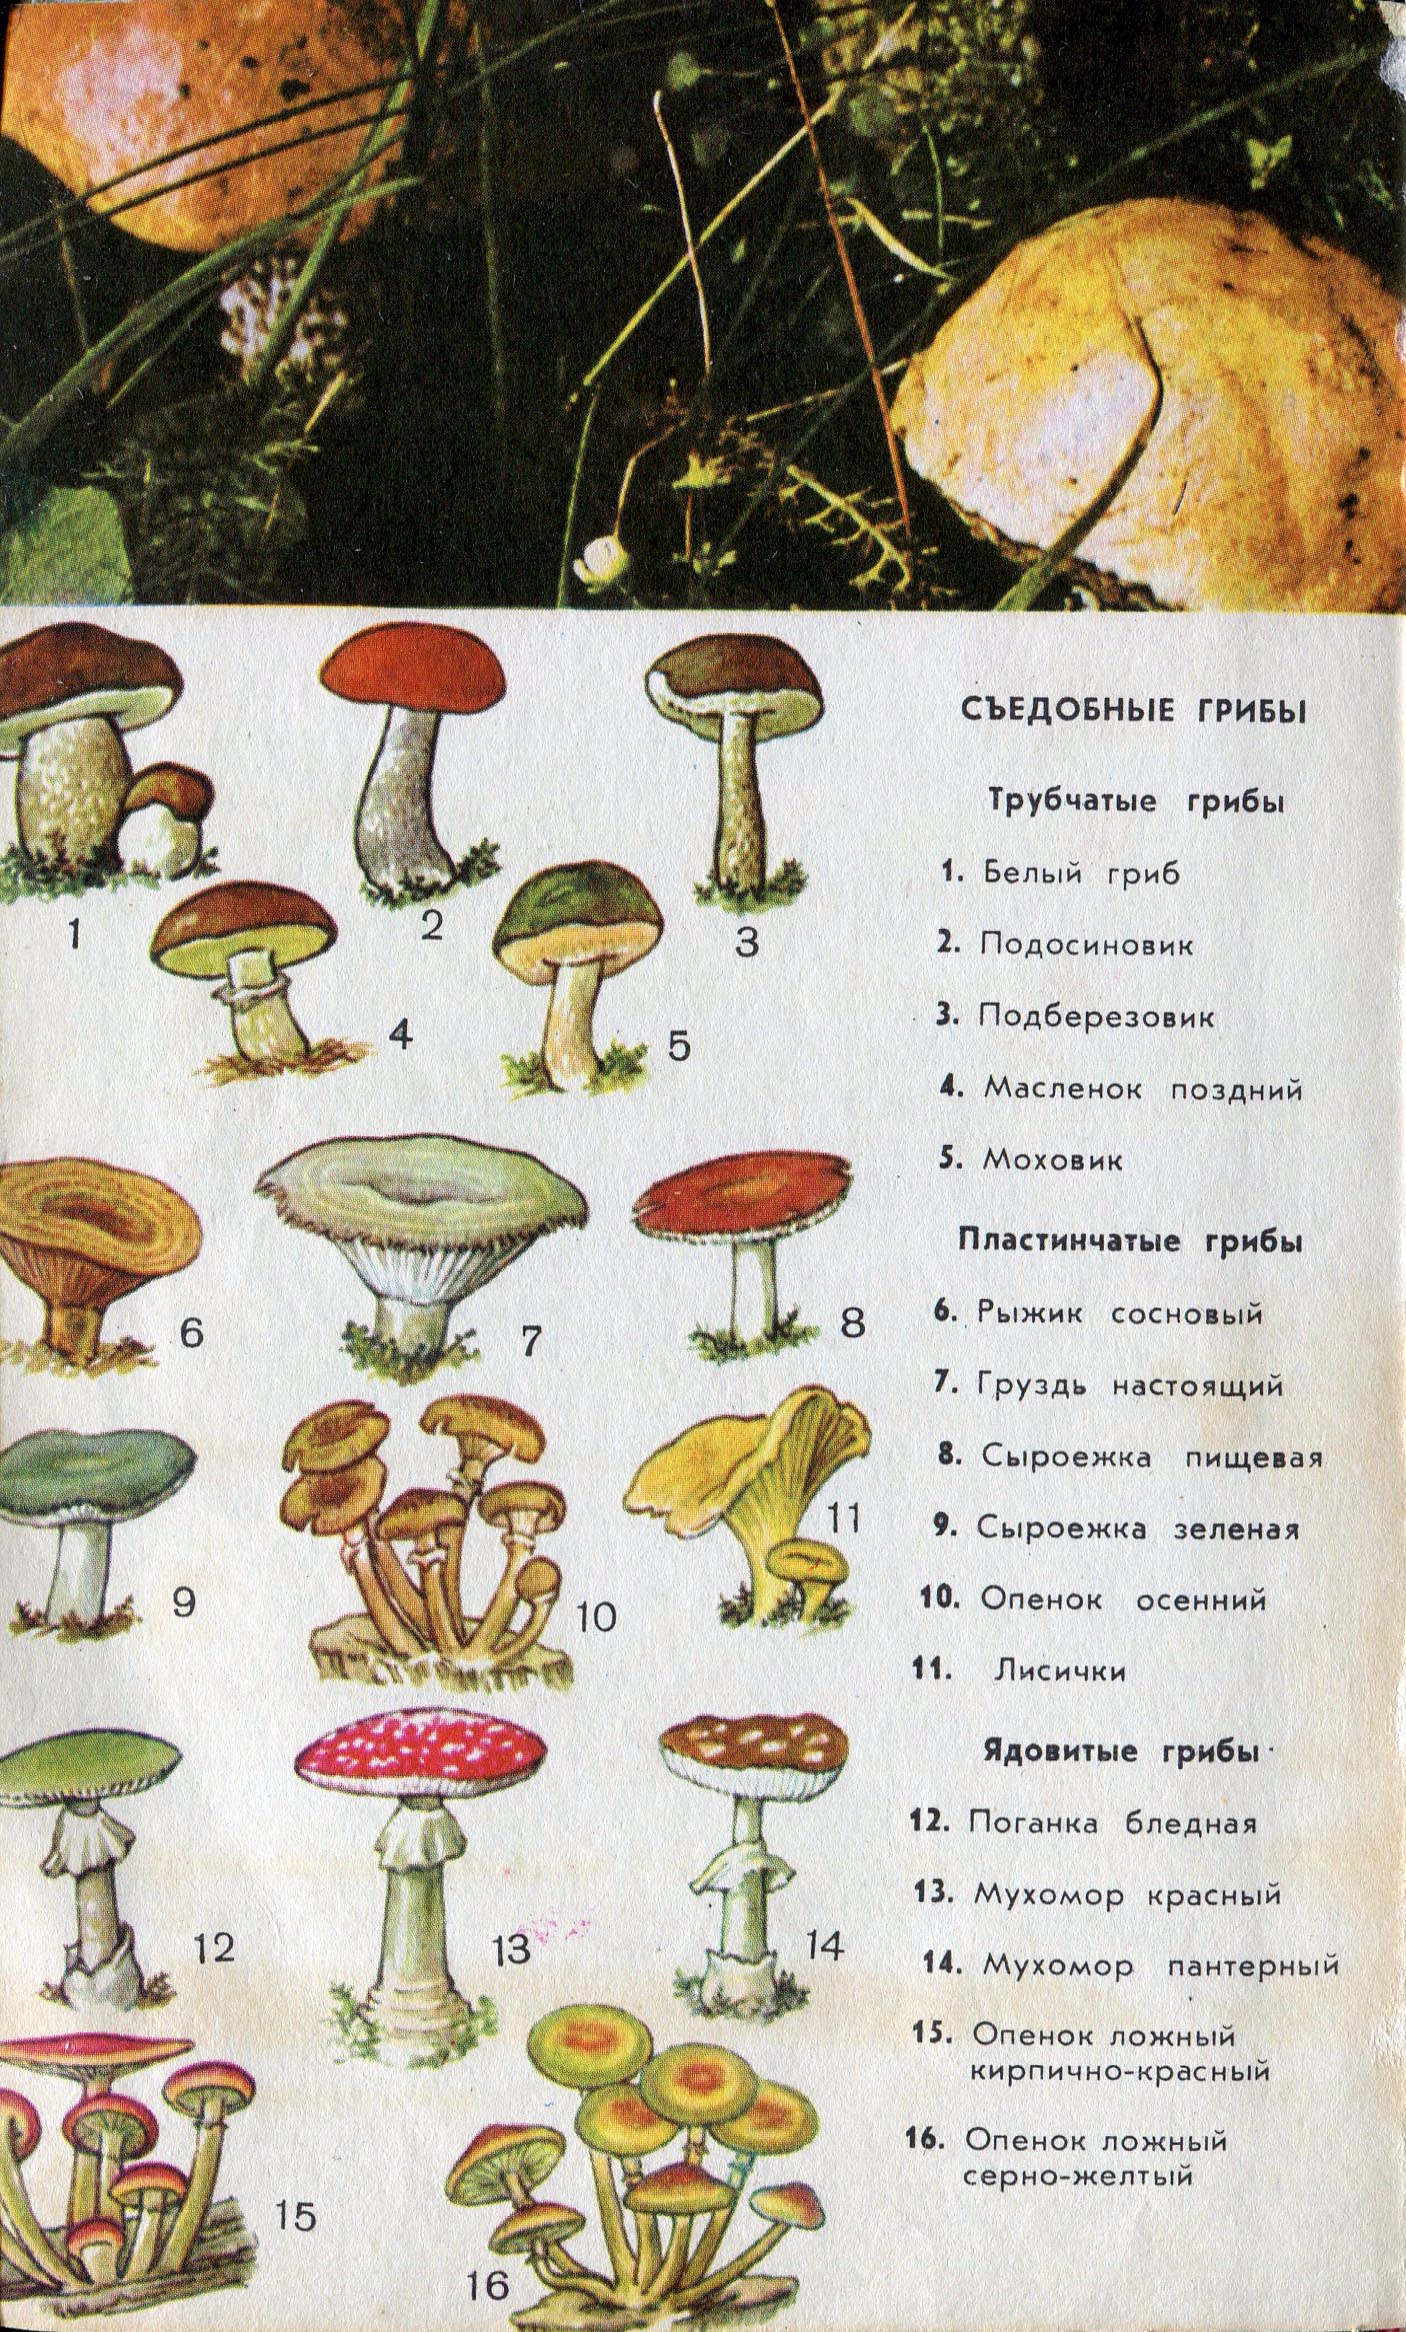 Съедобные и несъедобные грибы пластинчатые и трубчатые